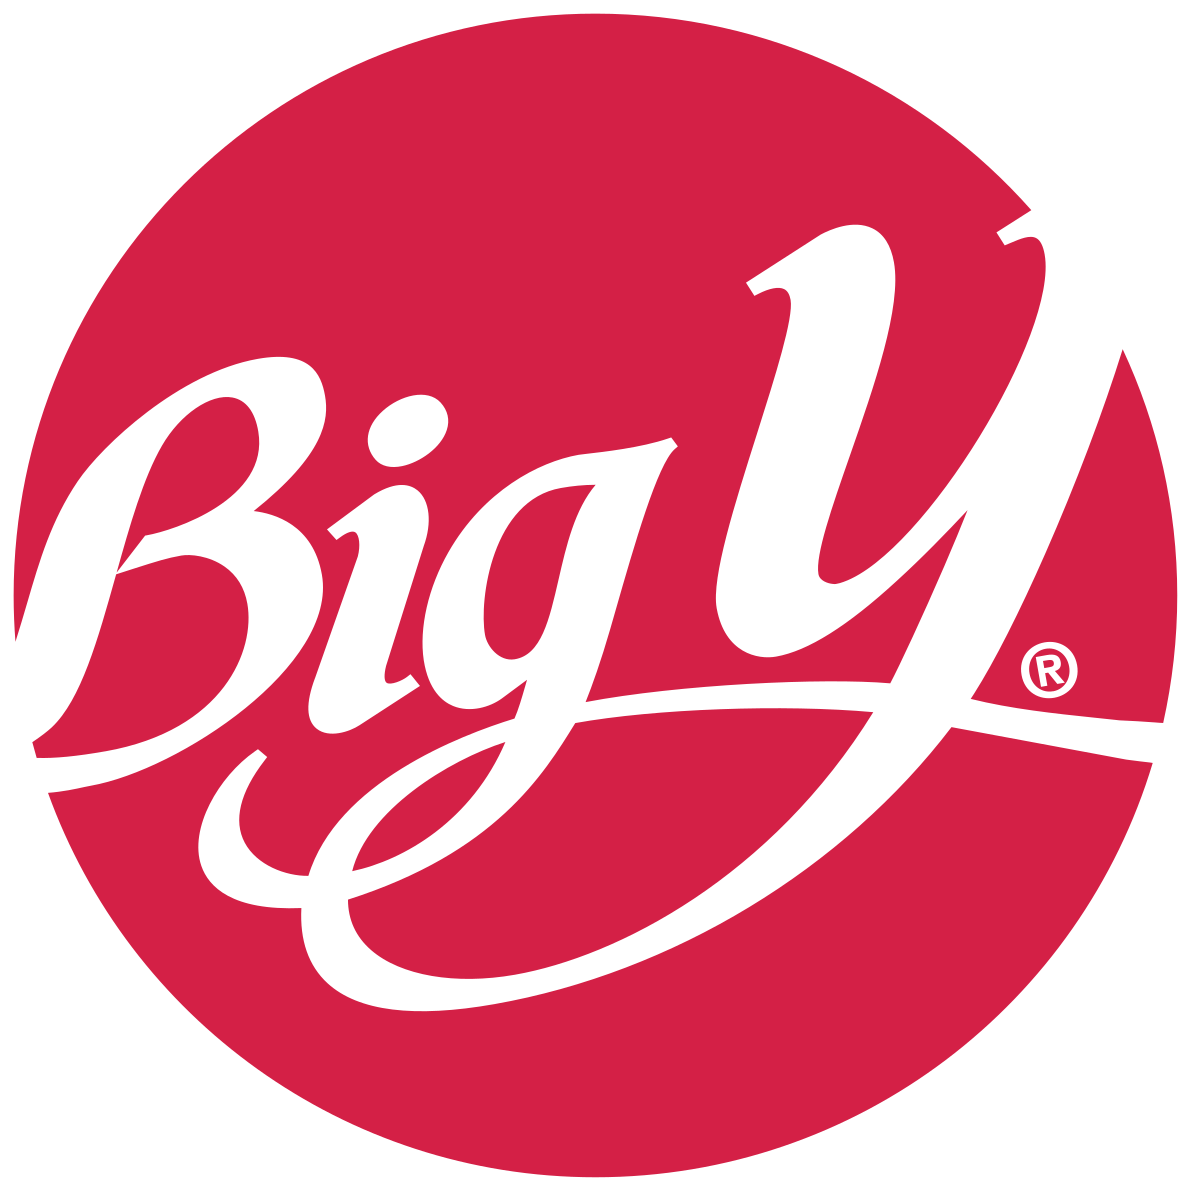 Big Y Logo - Big Y